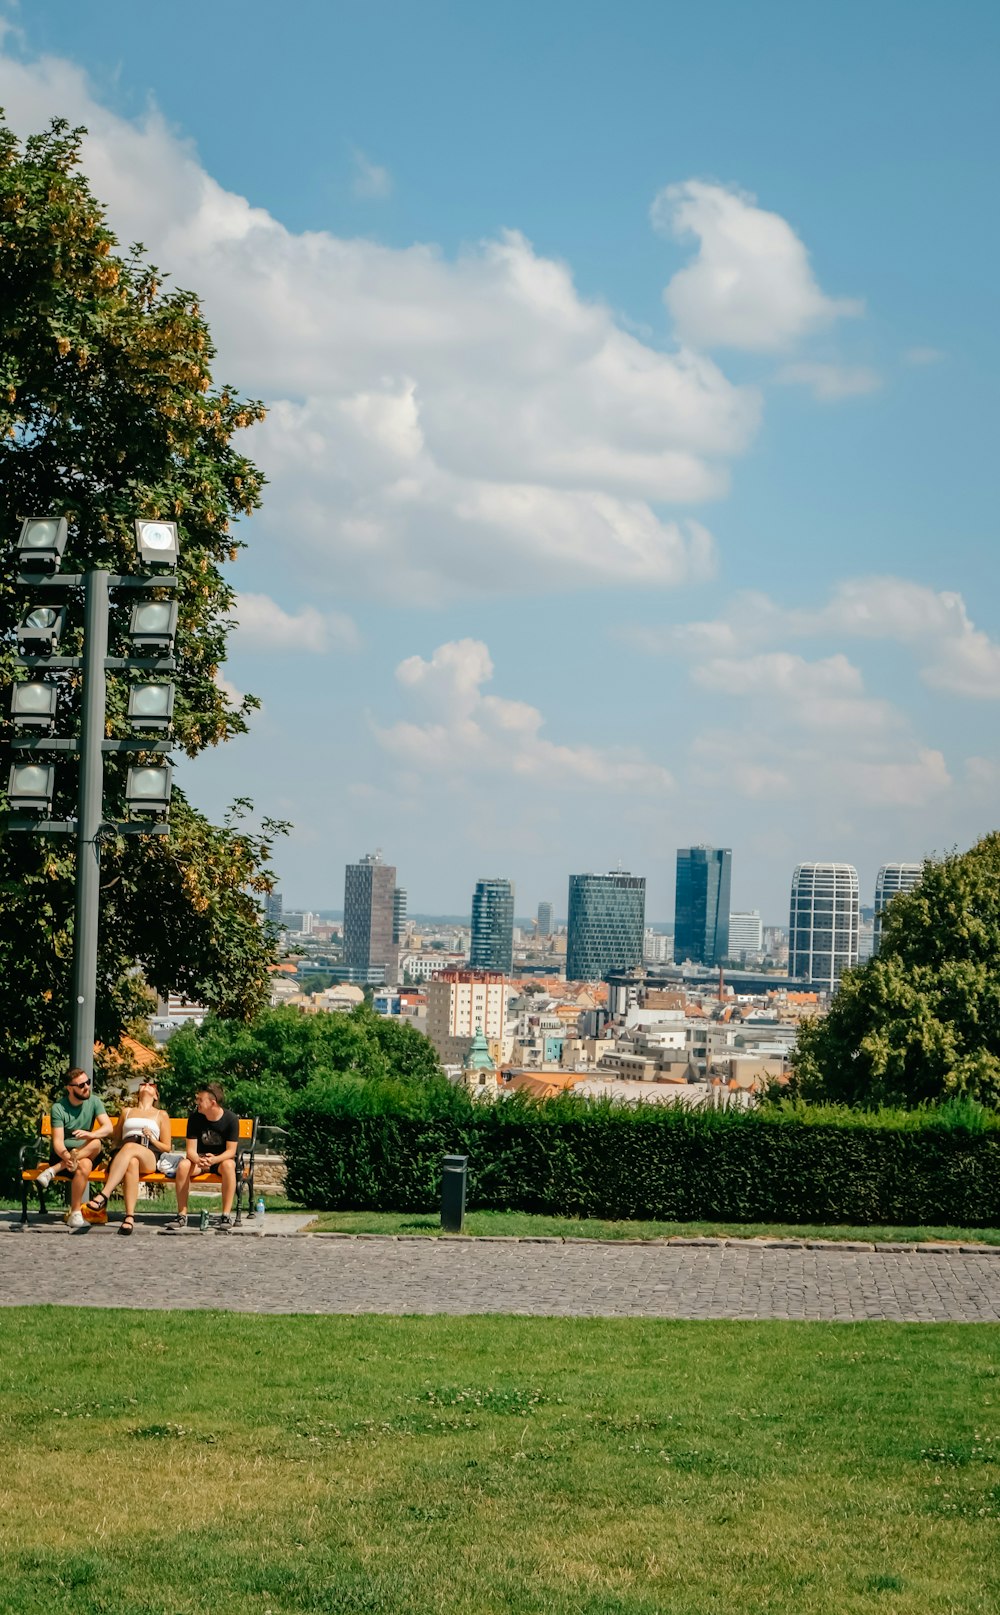 Eine Gruppe von Menschen sitzt auf einer Bank in einem Park mit einer Stadt im Hintergrund